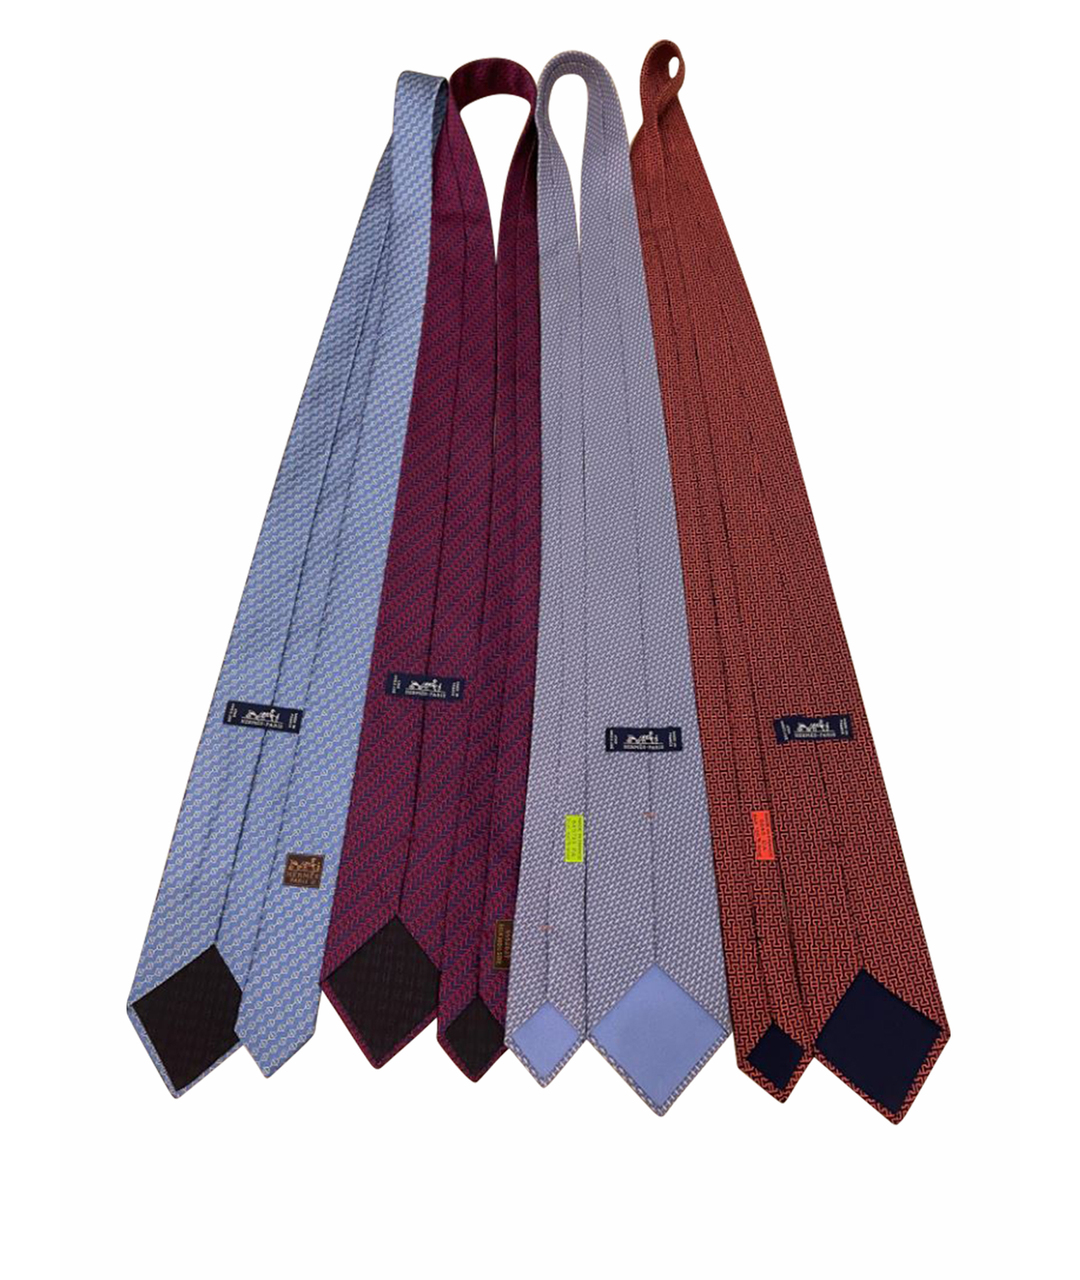 HERMES PRE-OWNED Шелковый галстук, фото 1